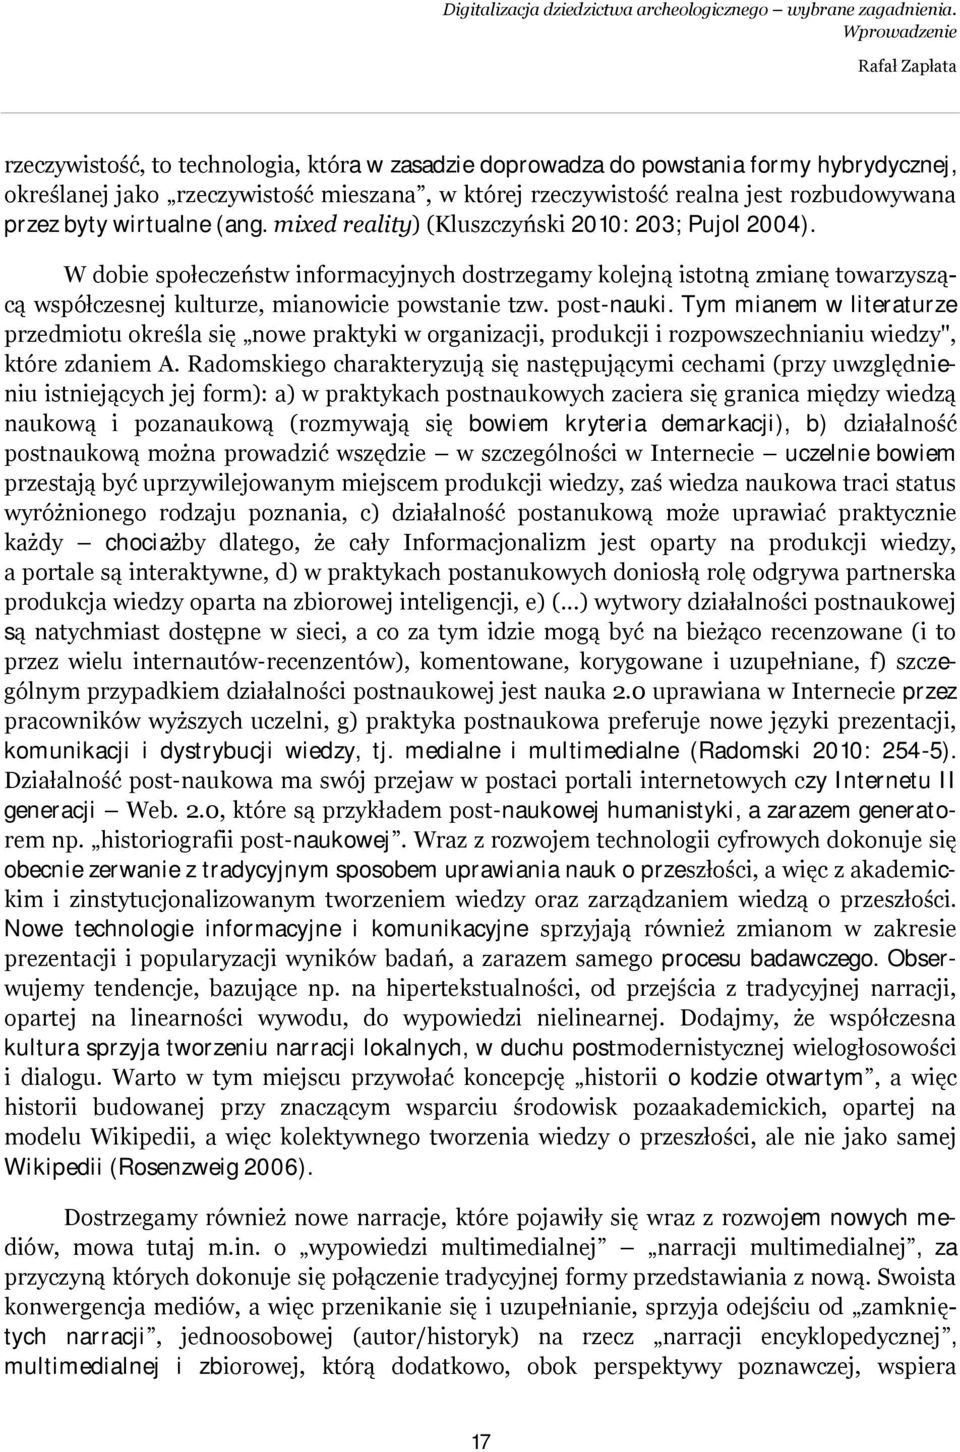 rozbudowywana przez byty wirtualne (ang. mixed reality) (Kluszczyński 2010: 203; Pujol 2004).